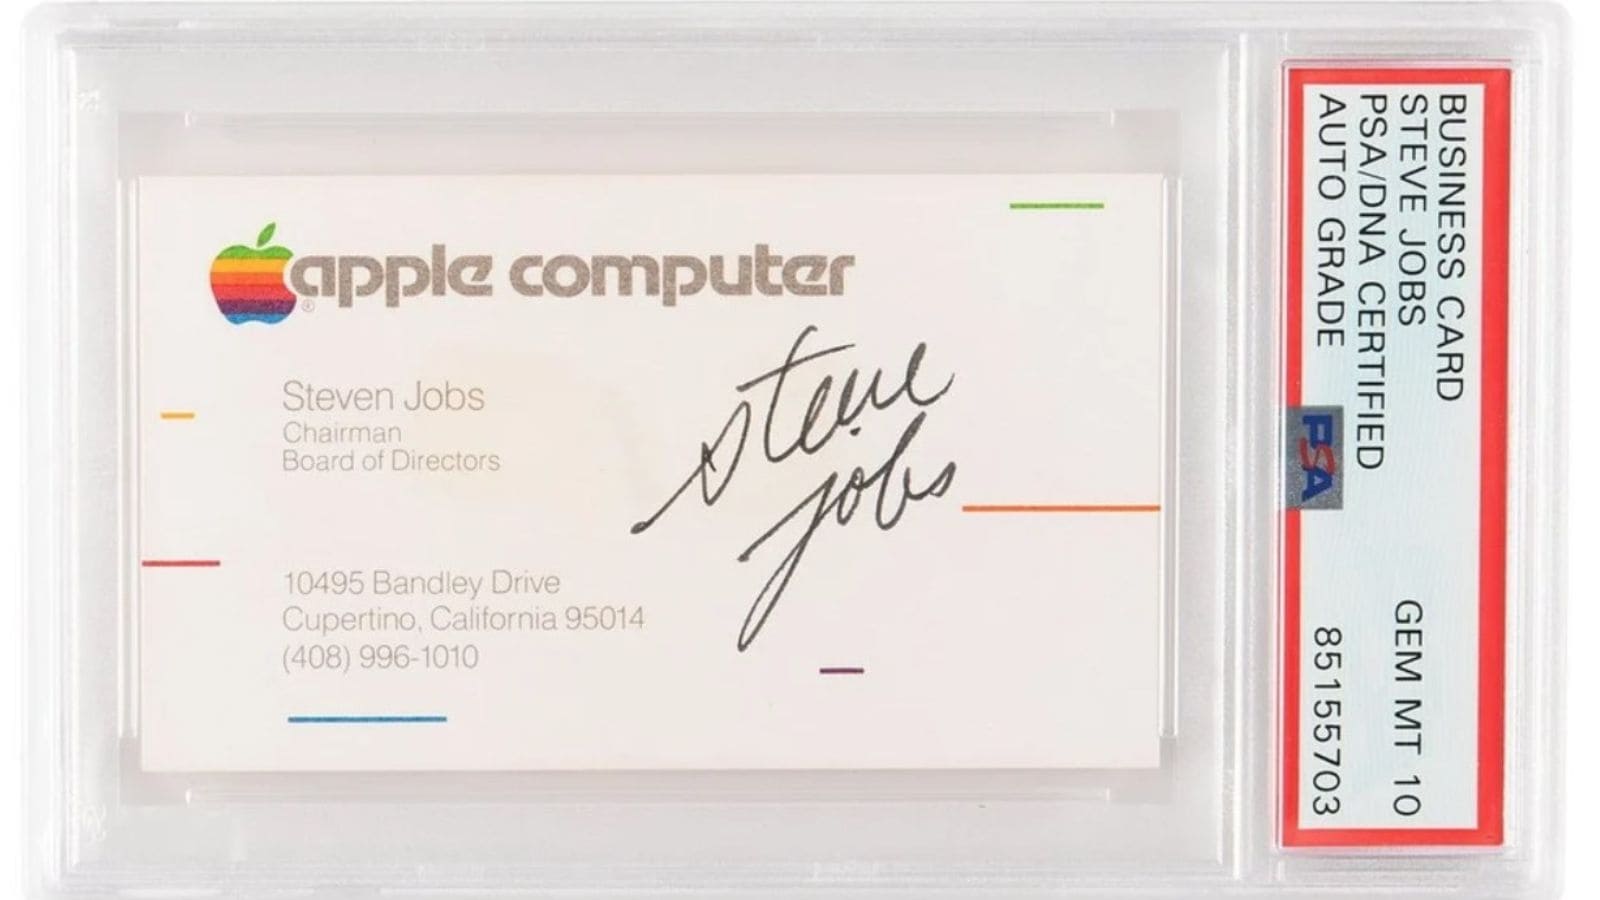 Il biglietto da visita di Steve Jobs, tra gli oggetti più ambiti all'asta "Steve Jobs and the Apple Computer Revolution"